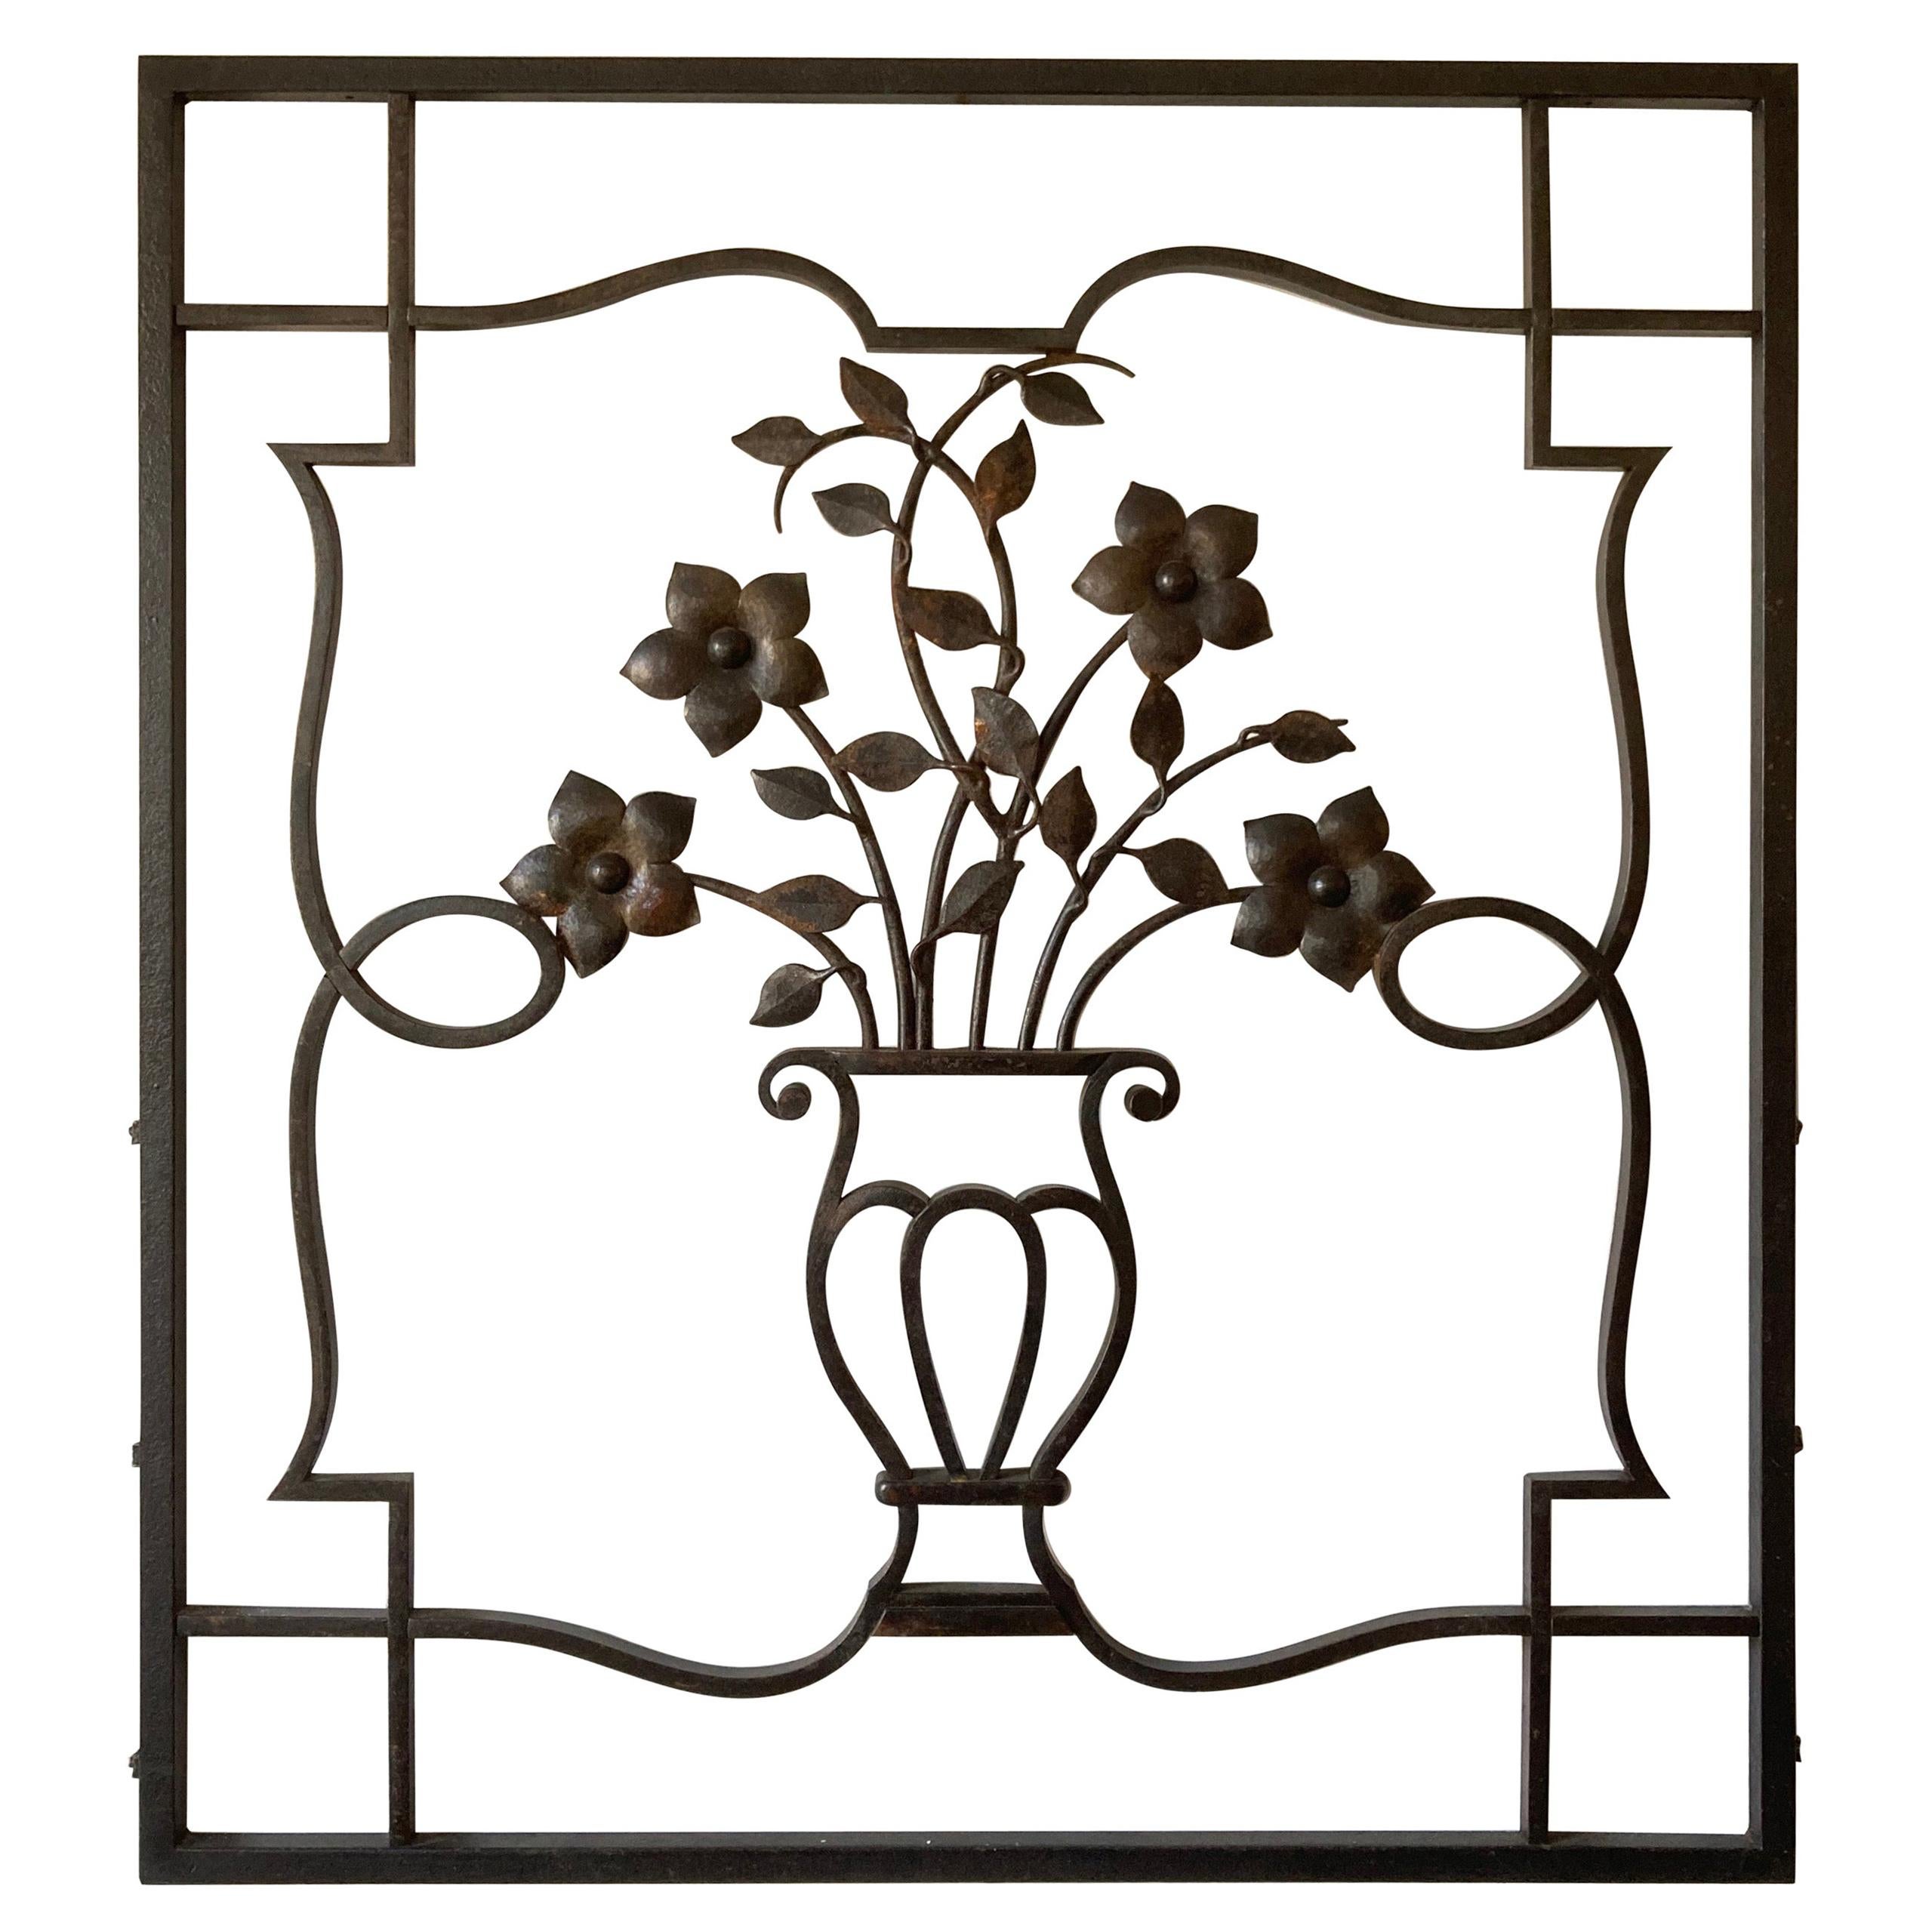 Dekorative Eisen-Wandskulptur oder Applique, Urne und Blumenmotiv